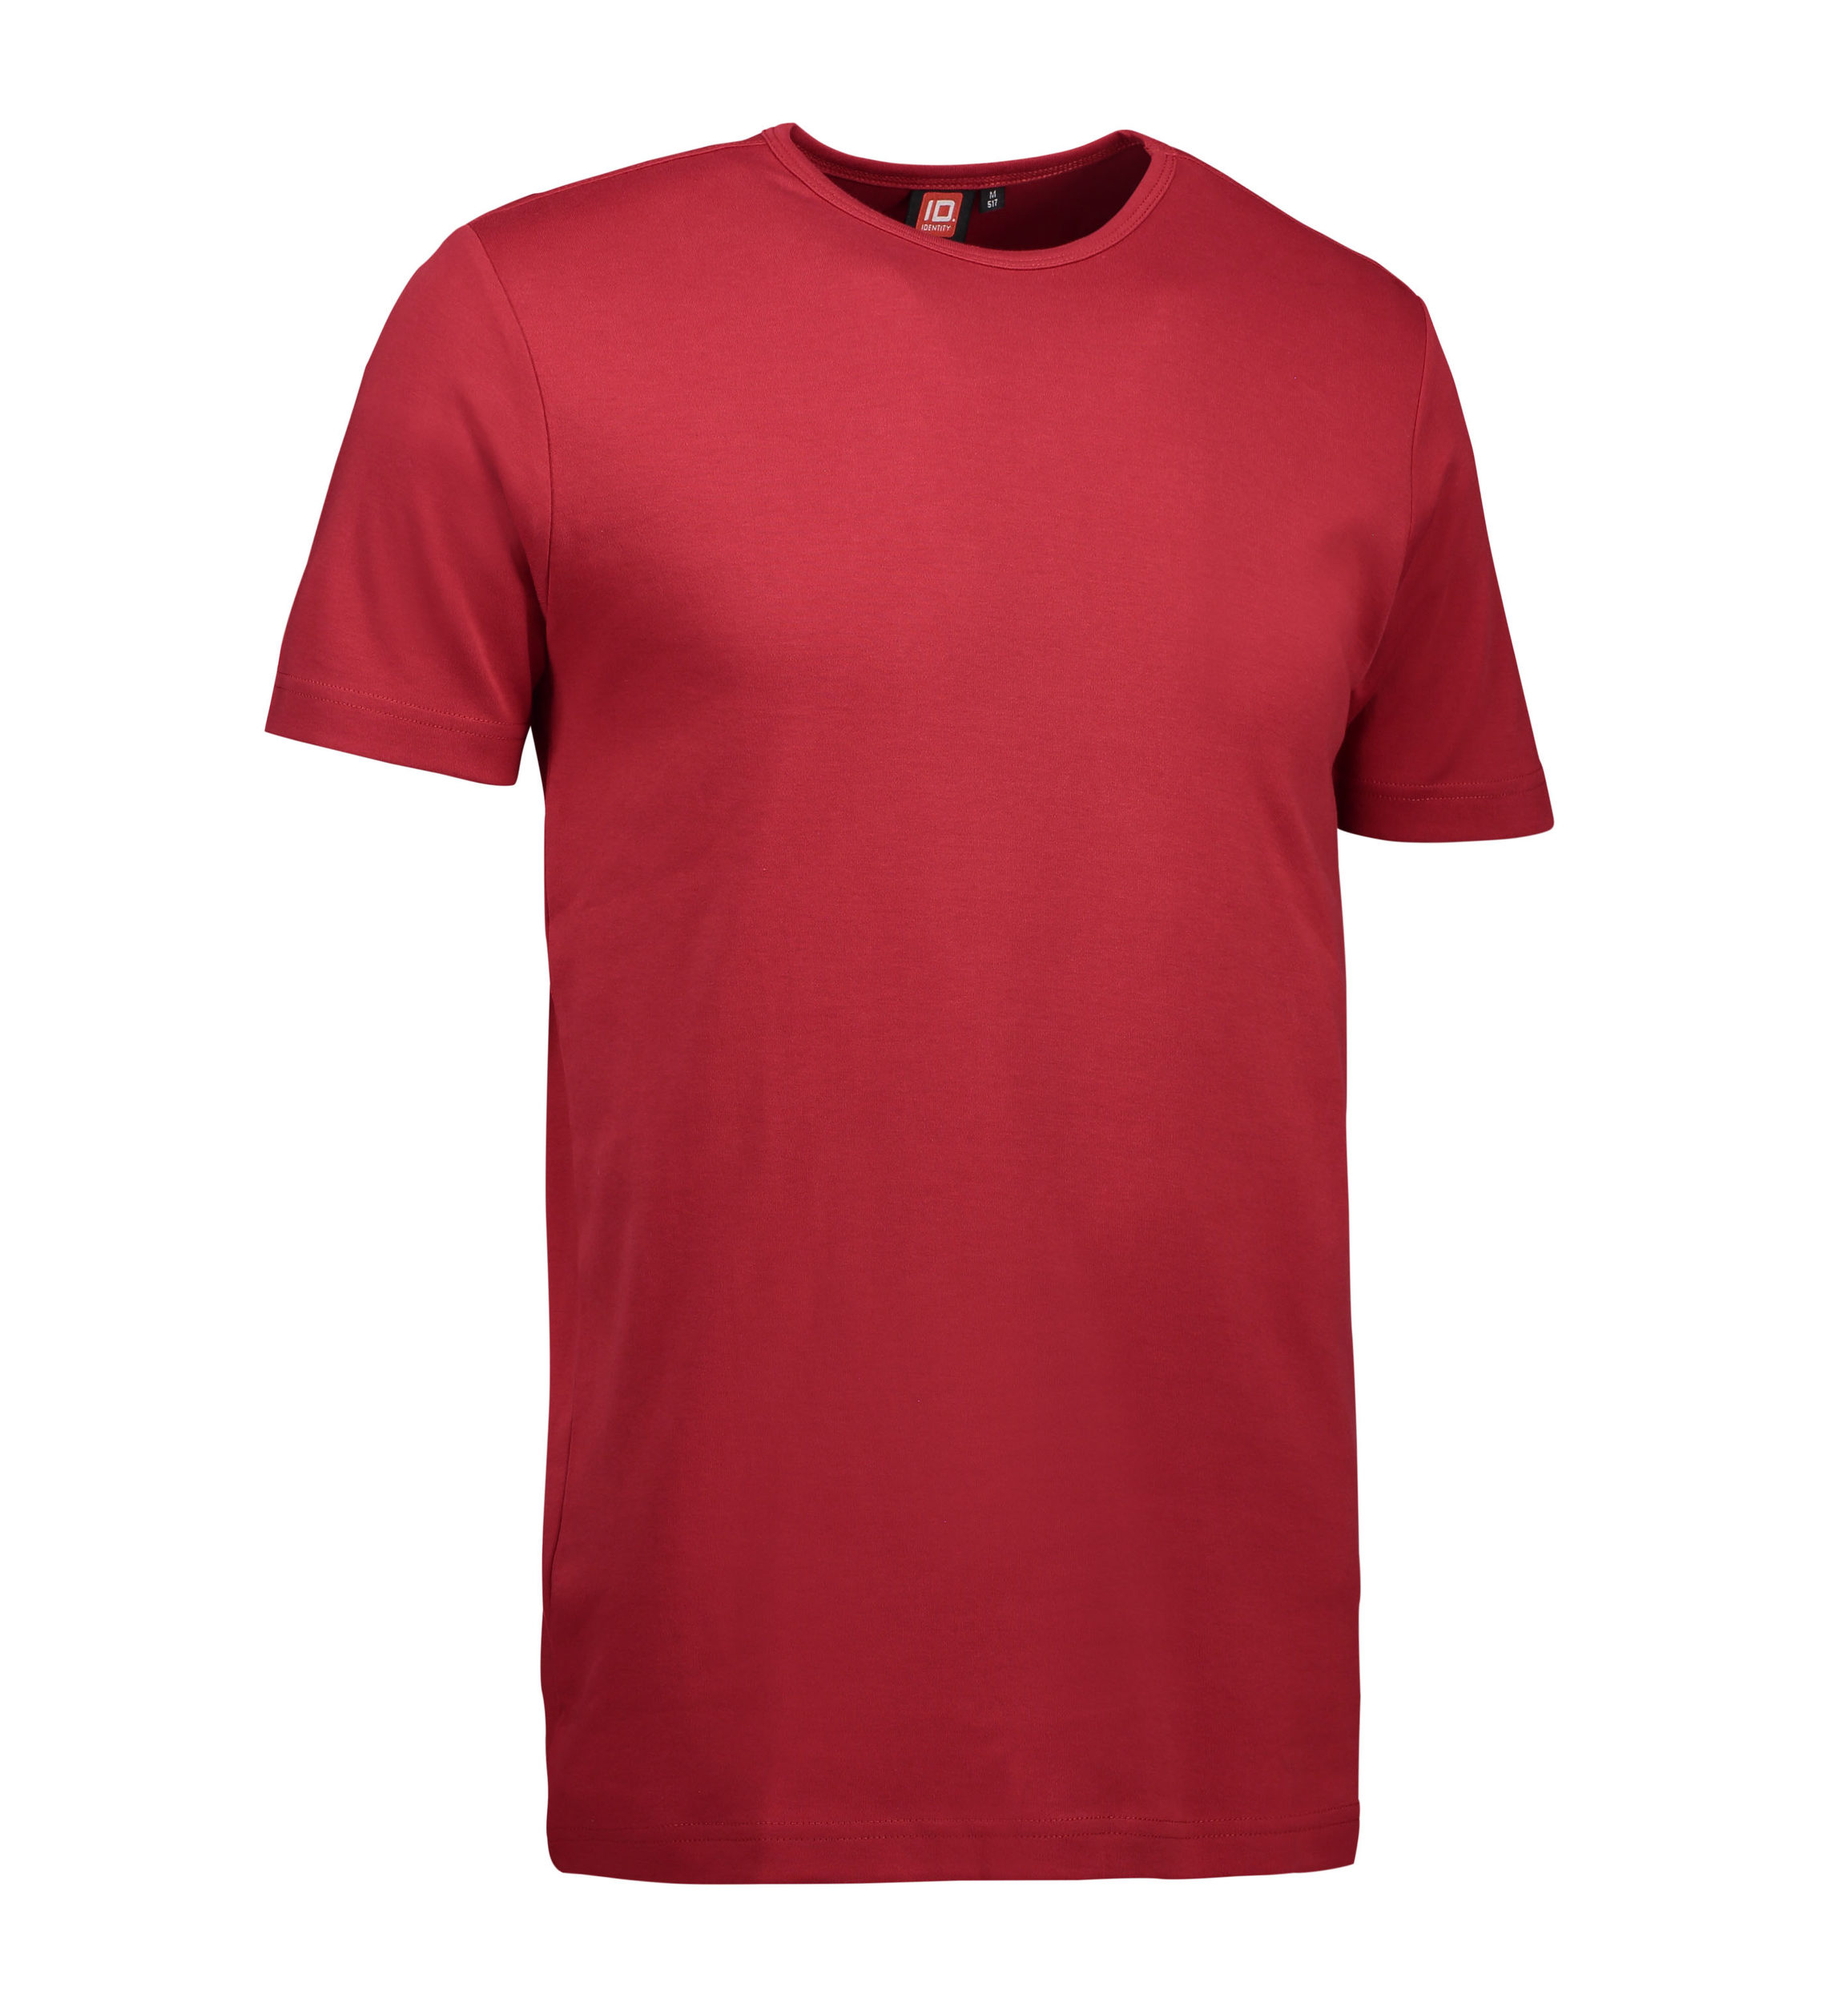 Billede af Rød t-shirt med rund hals til mænd - XL hos Sygeplejebutikken.dk